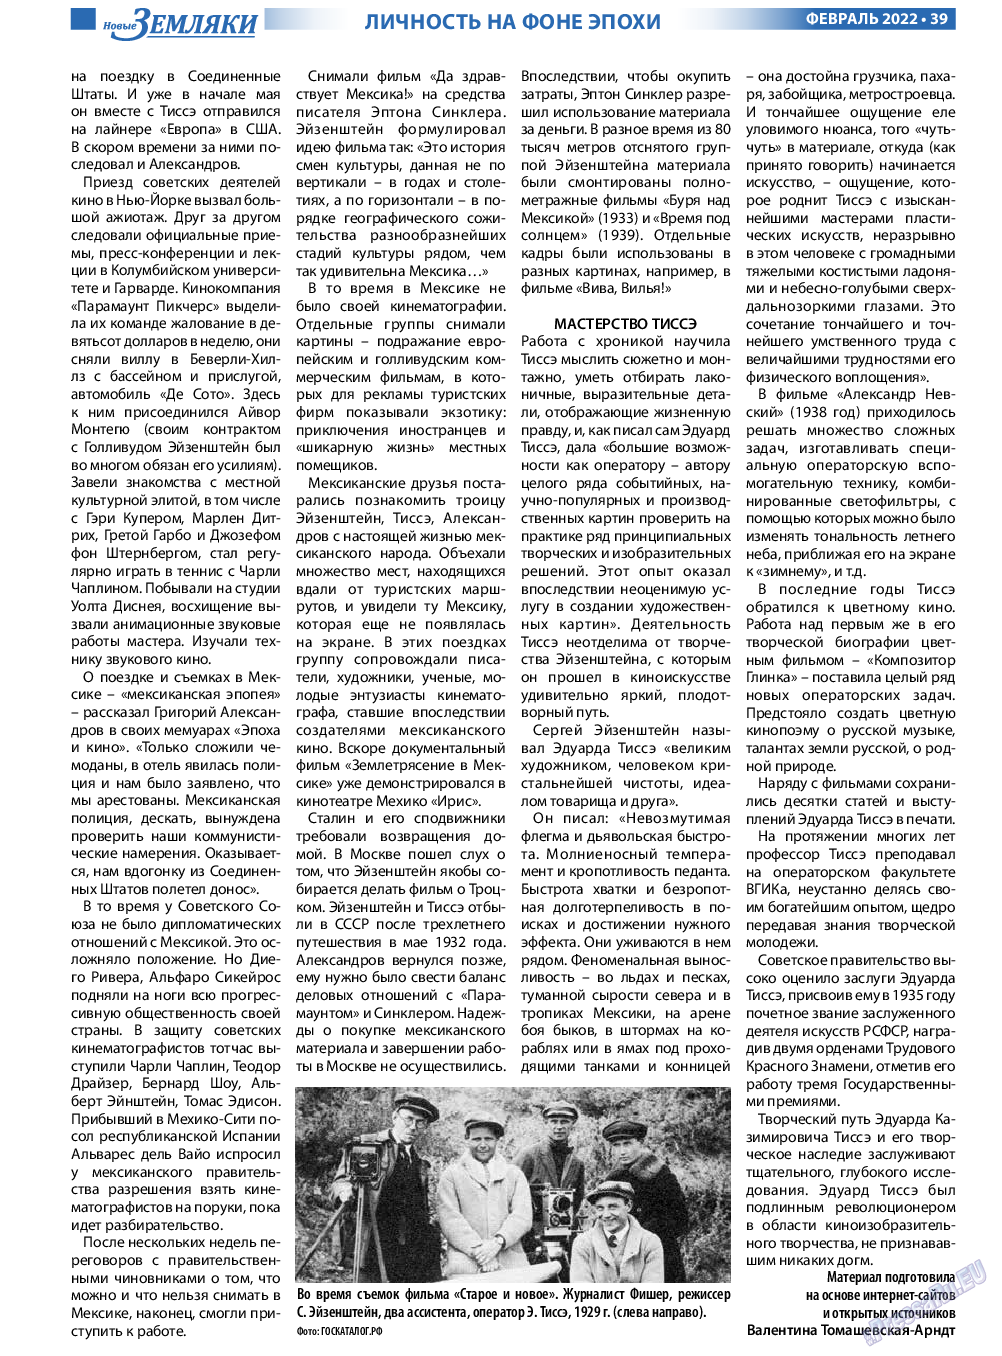 Новые Земляки, газета. 2022 №2 стр.39